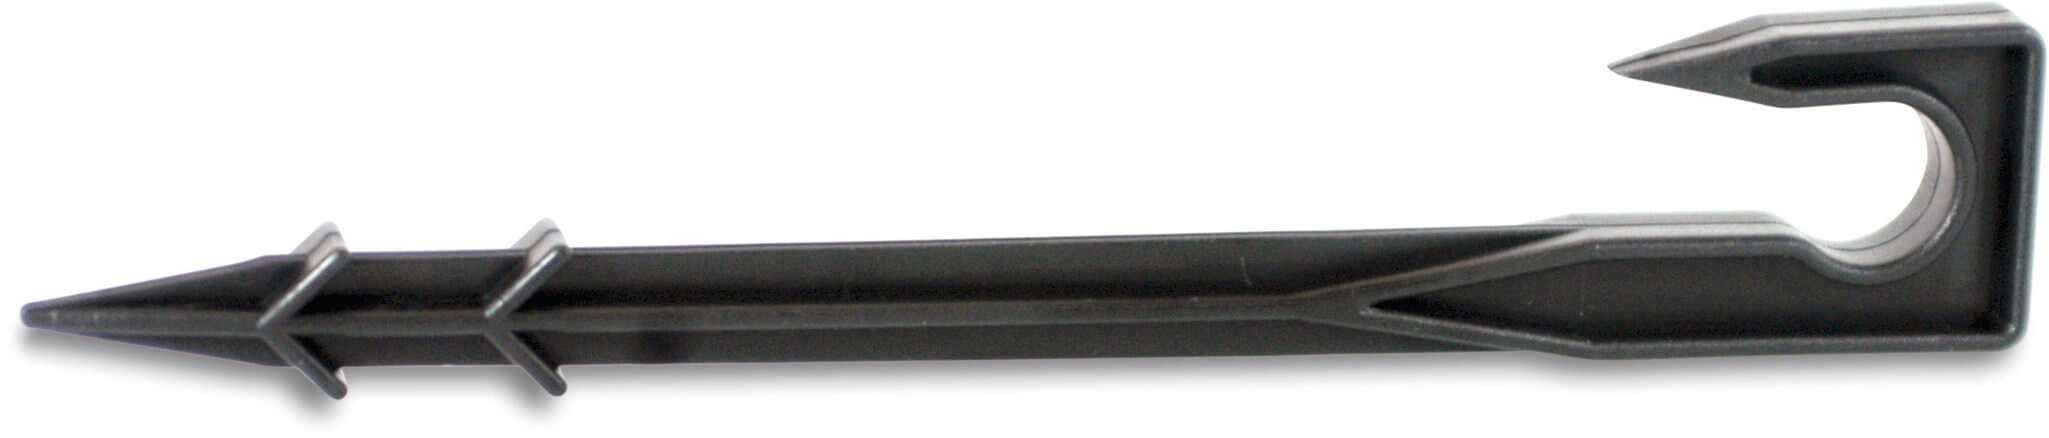 PE buis grondklem kunststof 20 mm zwart